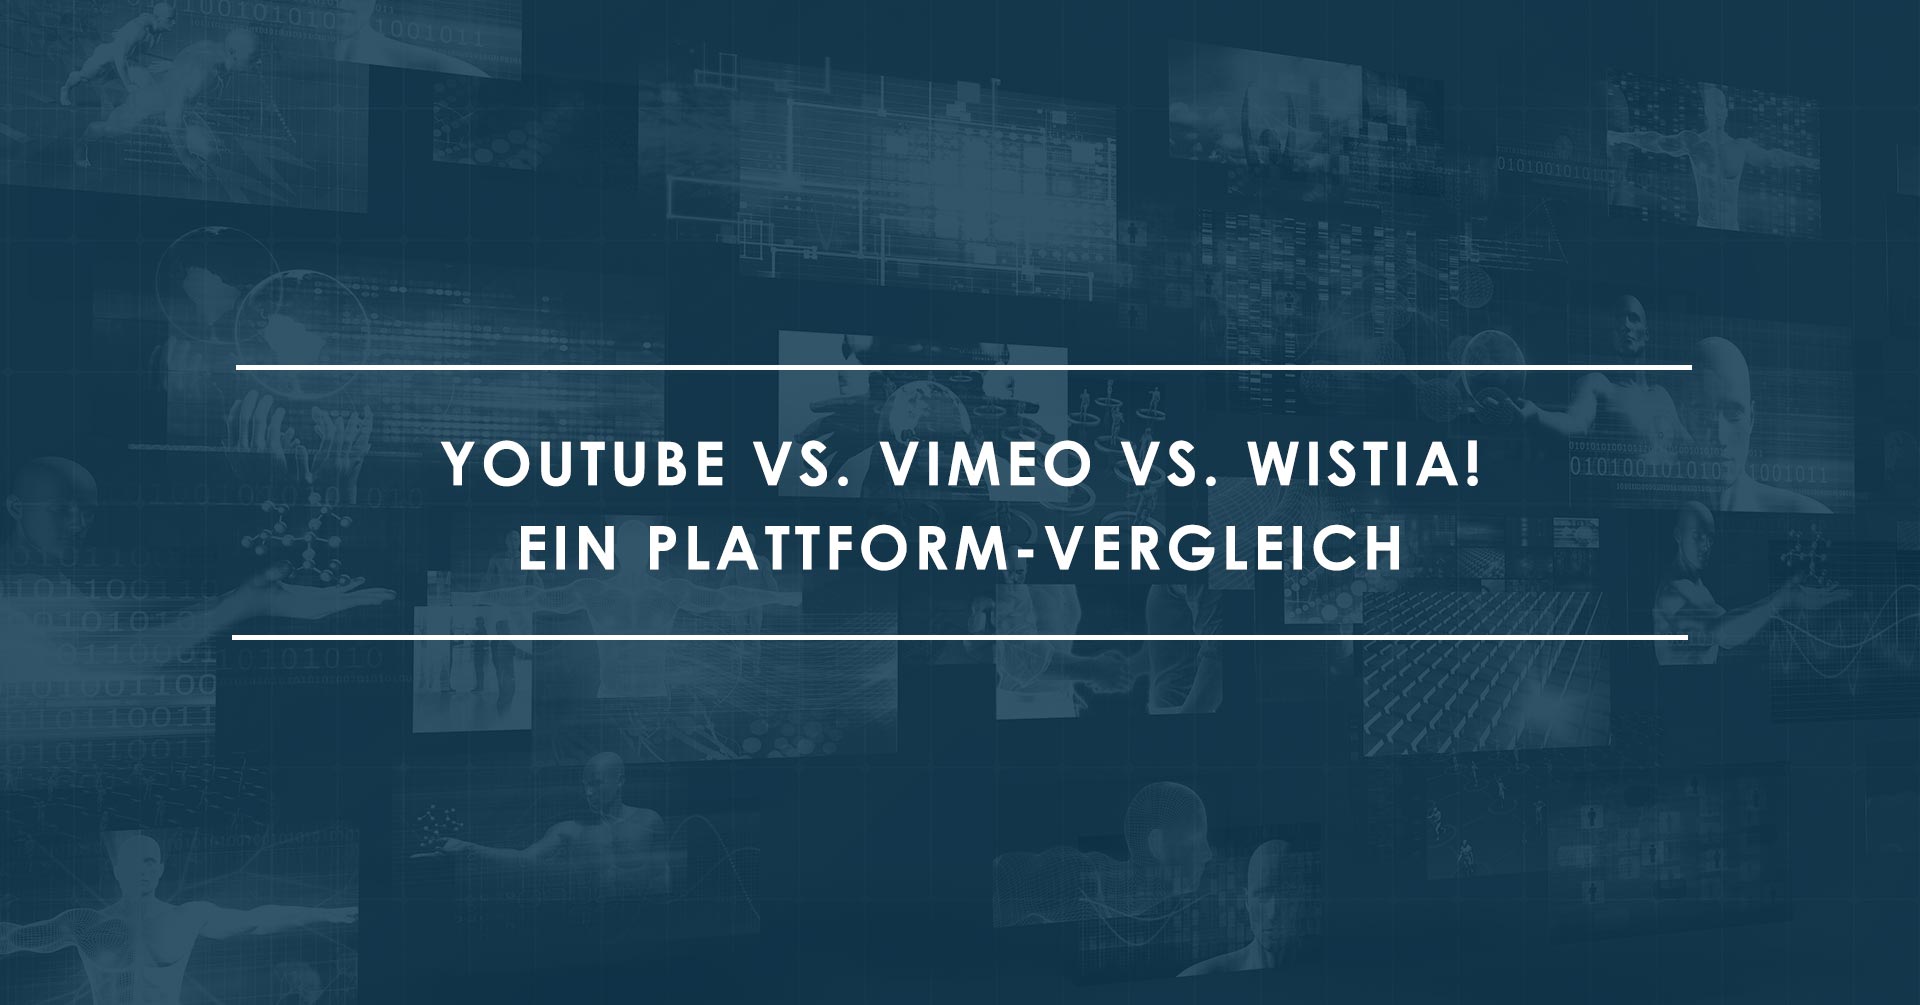 Youtube vs. Vimeo vs. Wistia